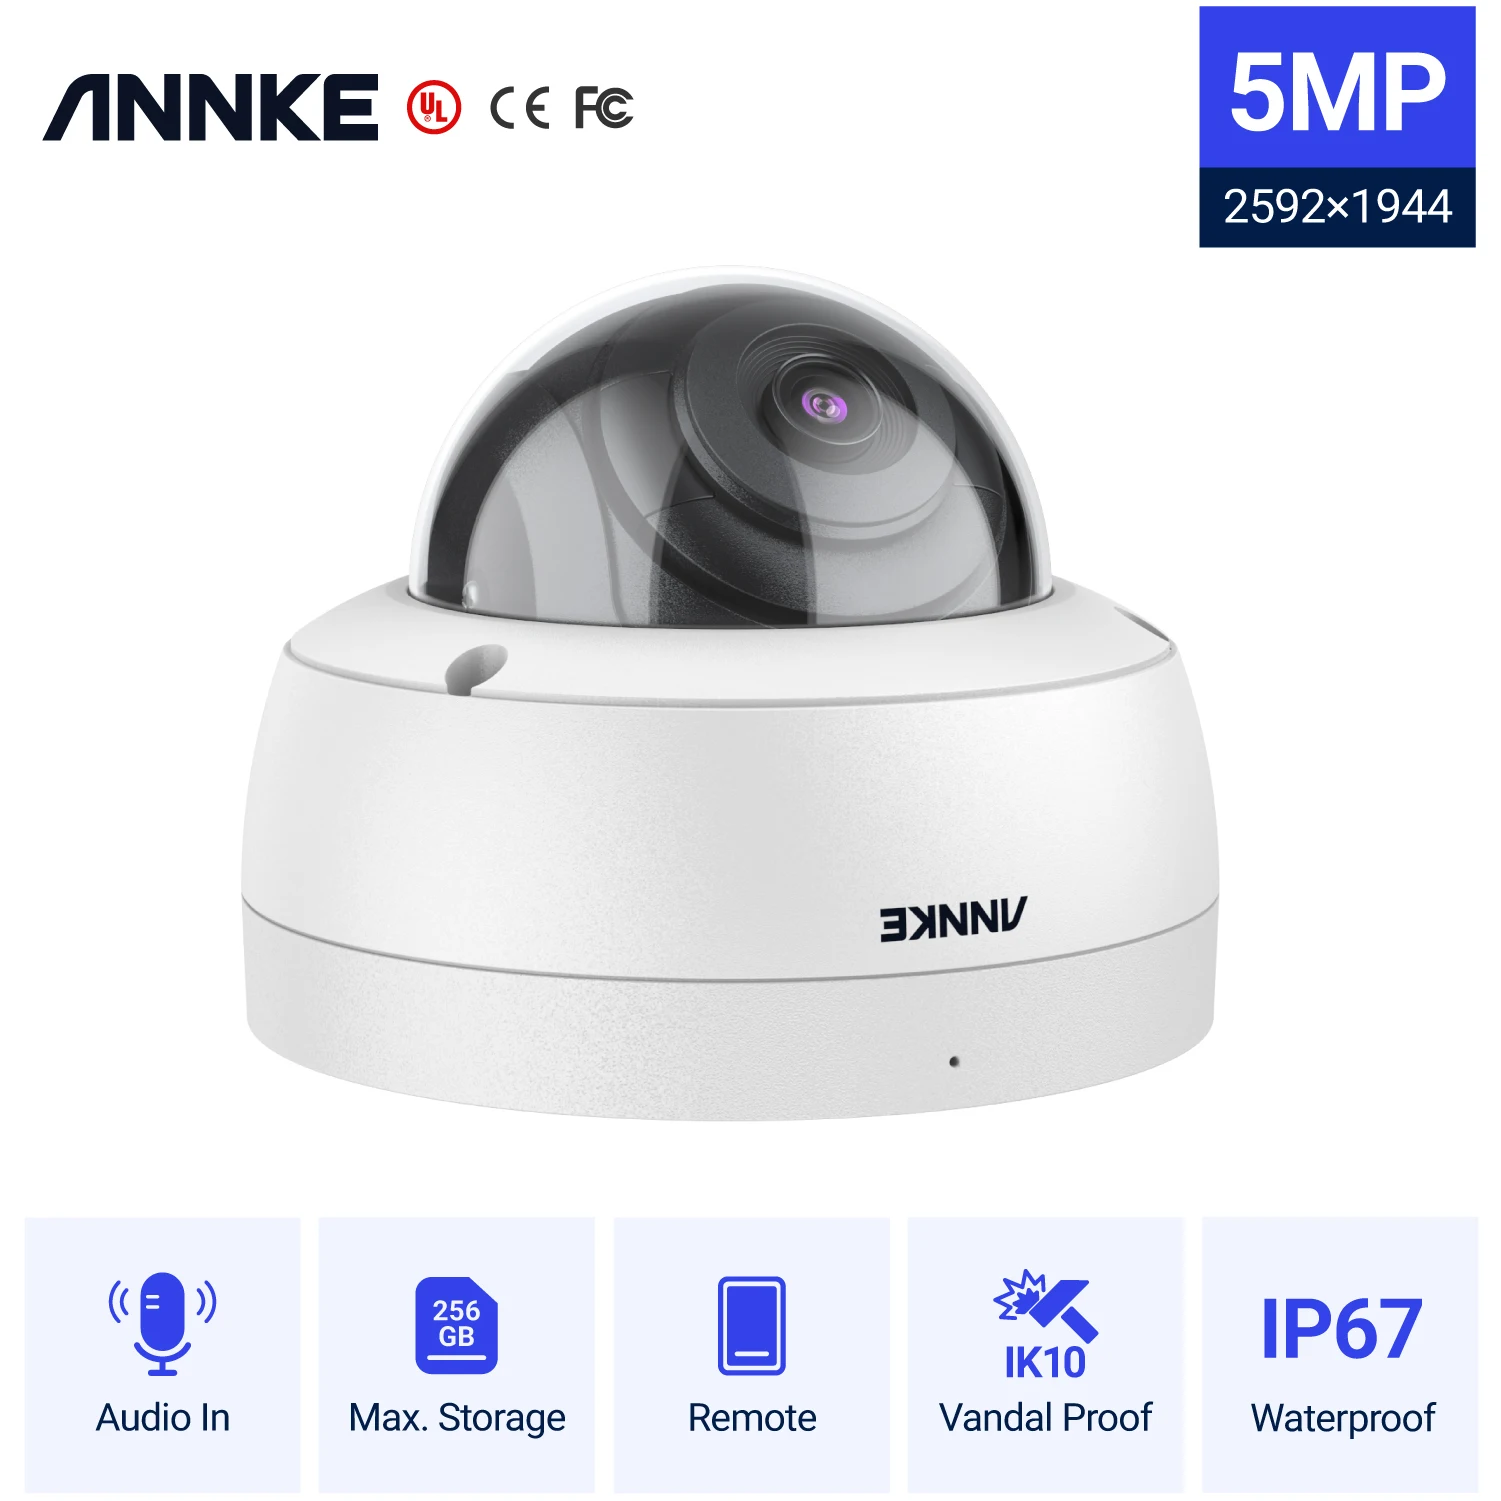 Tanio ANNKE 1PC 5MP HD System nadzoru bezpieczeństwa kamera ir-cut